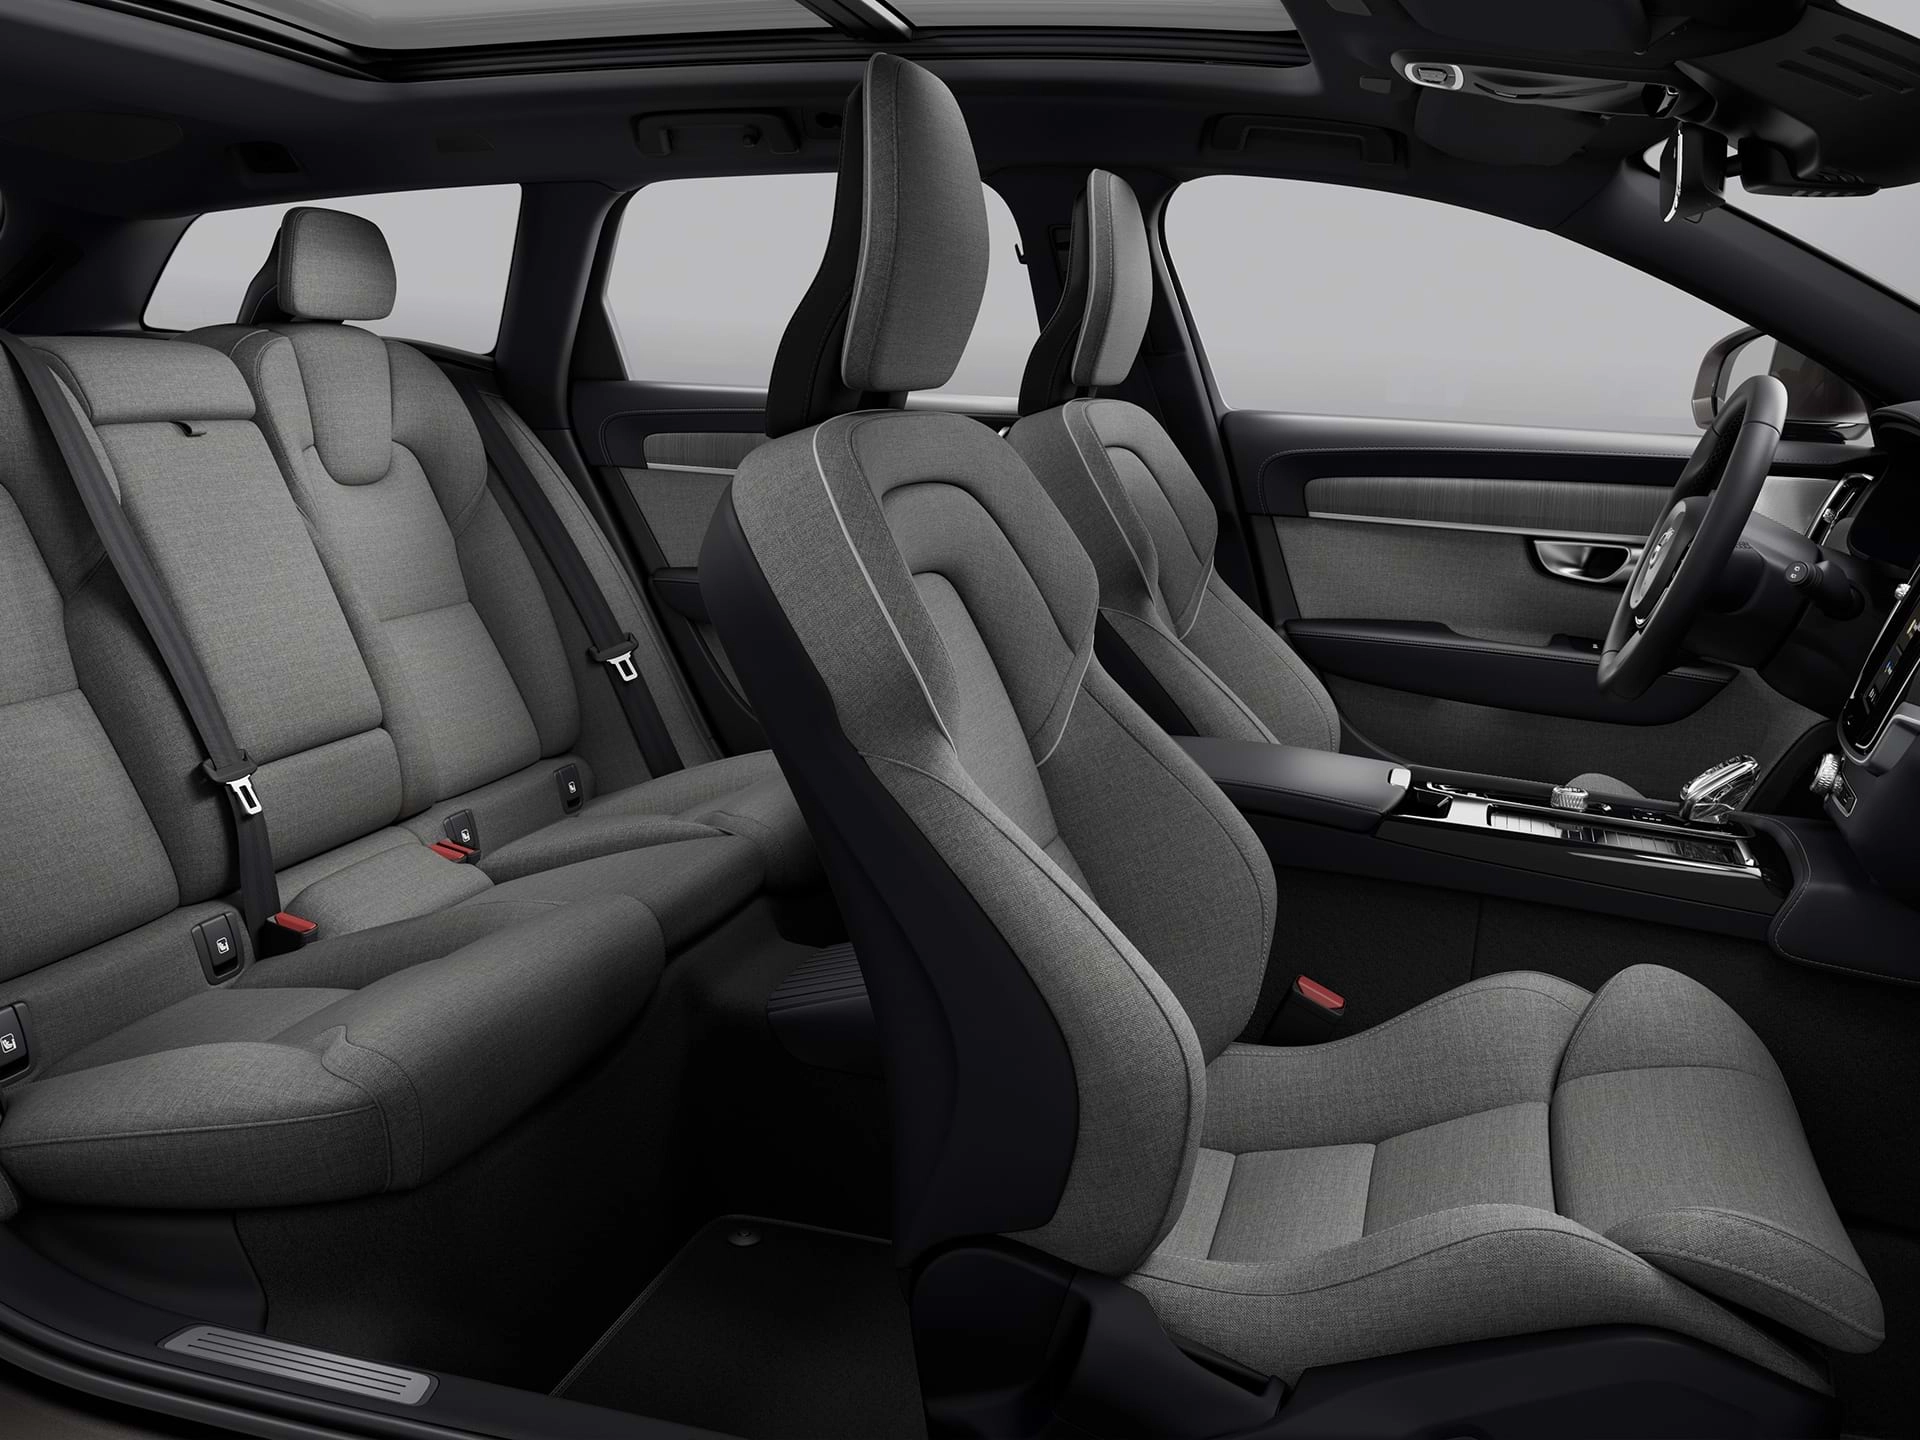 Vista panorámica de los cuatro asientos tapizados de la espaciosa cabina de un Volvo Estate.